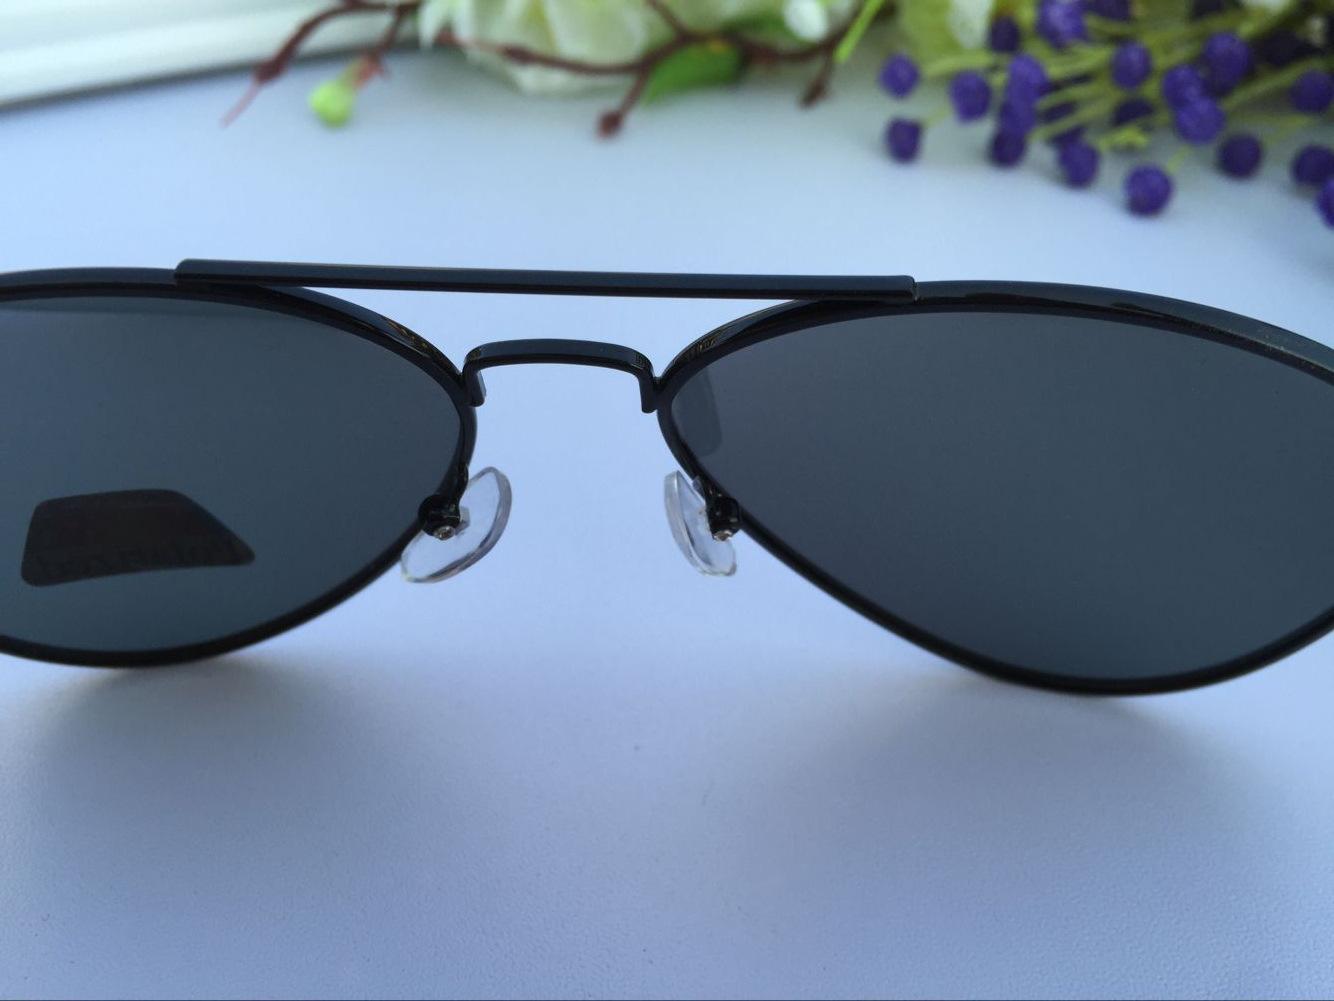 DIOR潮流太阳镜 夏季新款超薄太阳镜 时尚圆框太阳镜 - 七七奢侈品